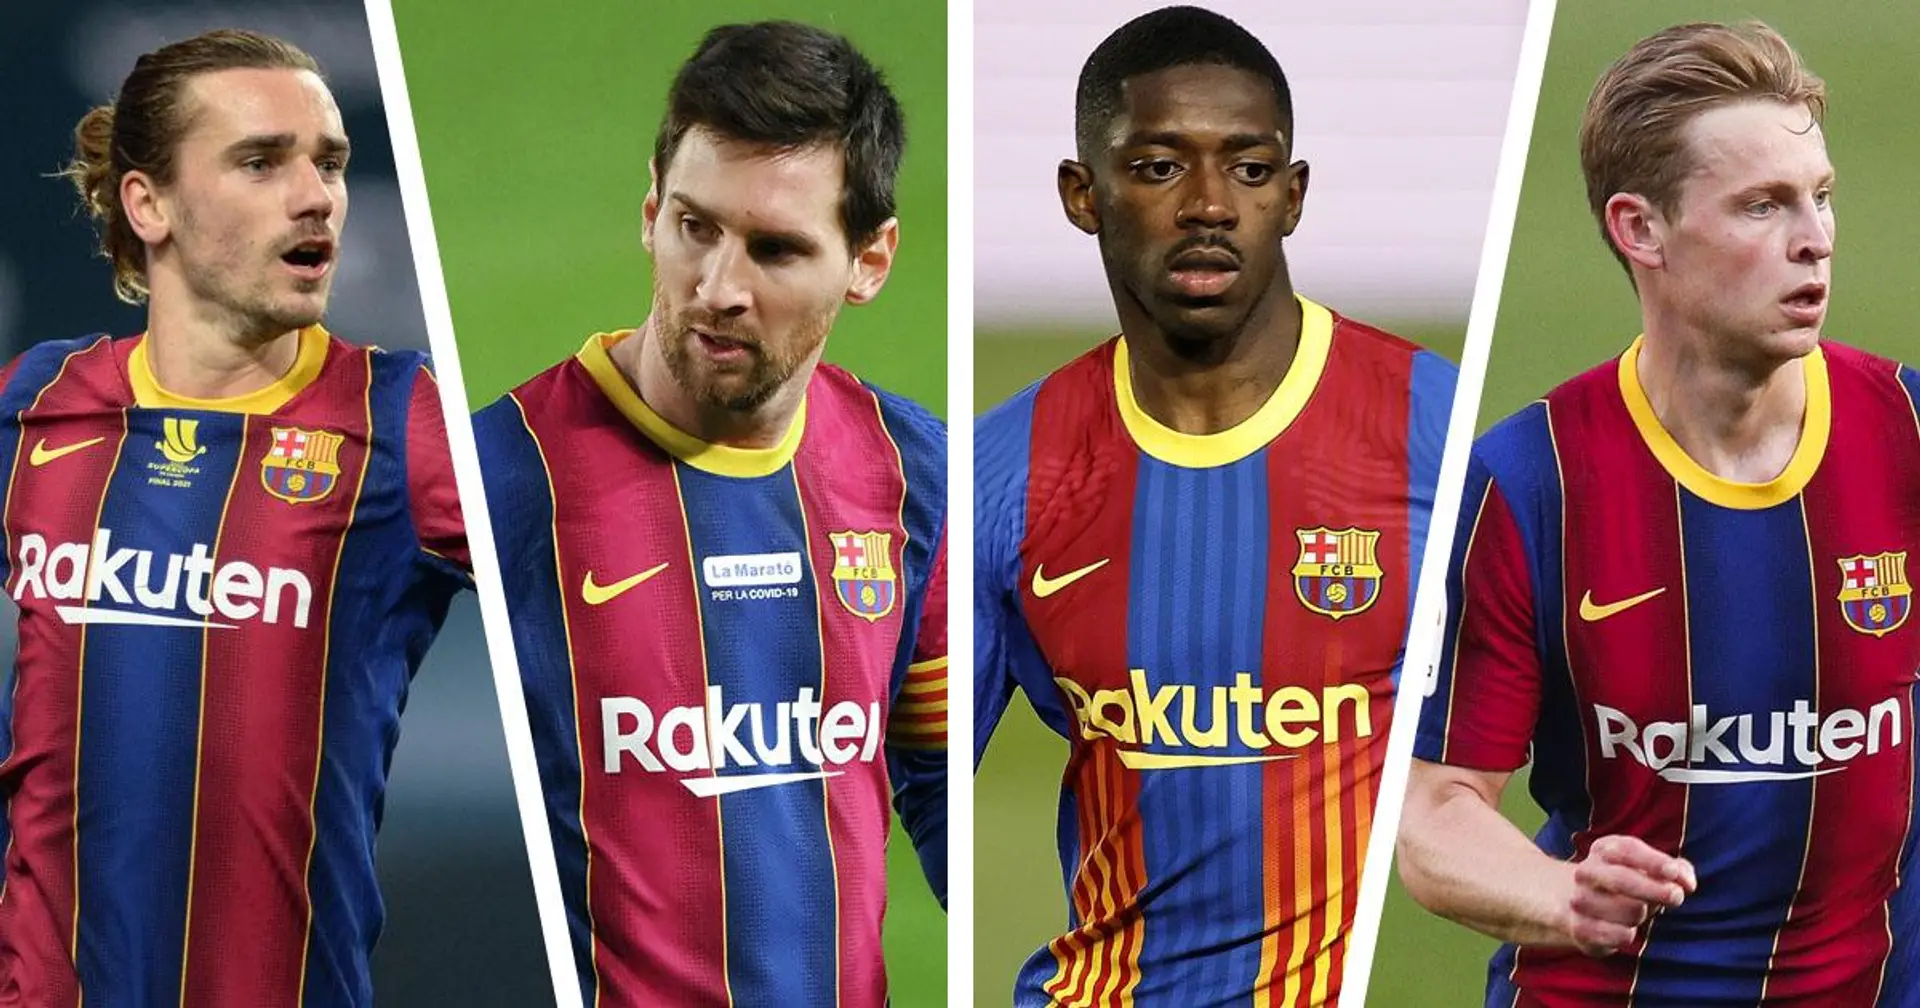 Messi loin devant, De Jong en 4e: un regard sur les meilleurs buteurs de Barcelone lors de la saison 2020/21 